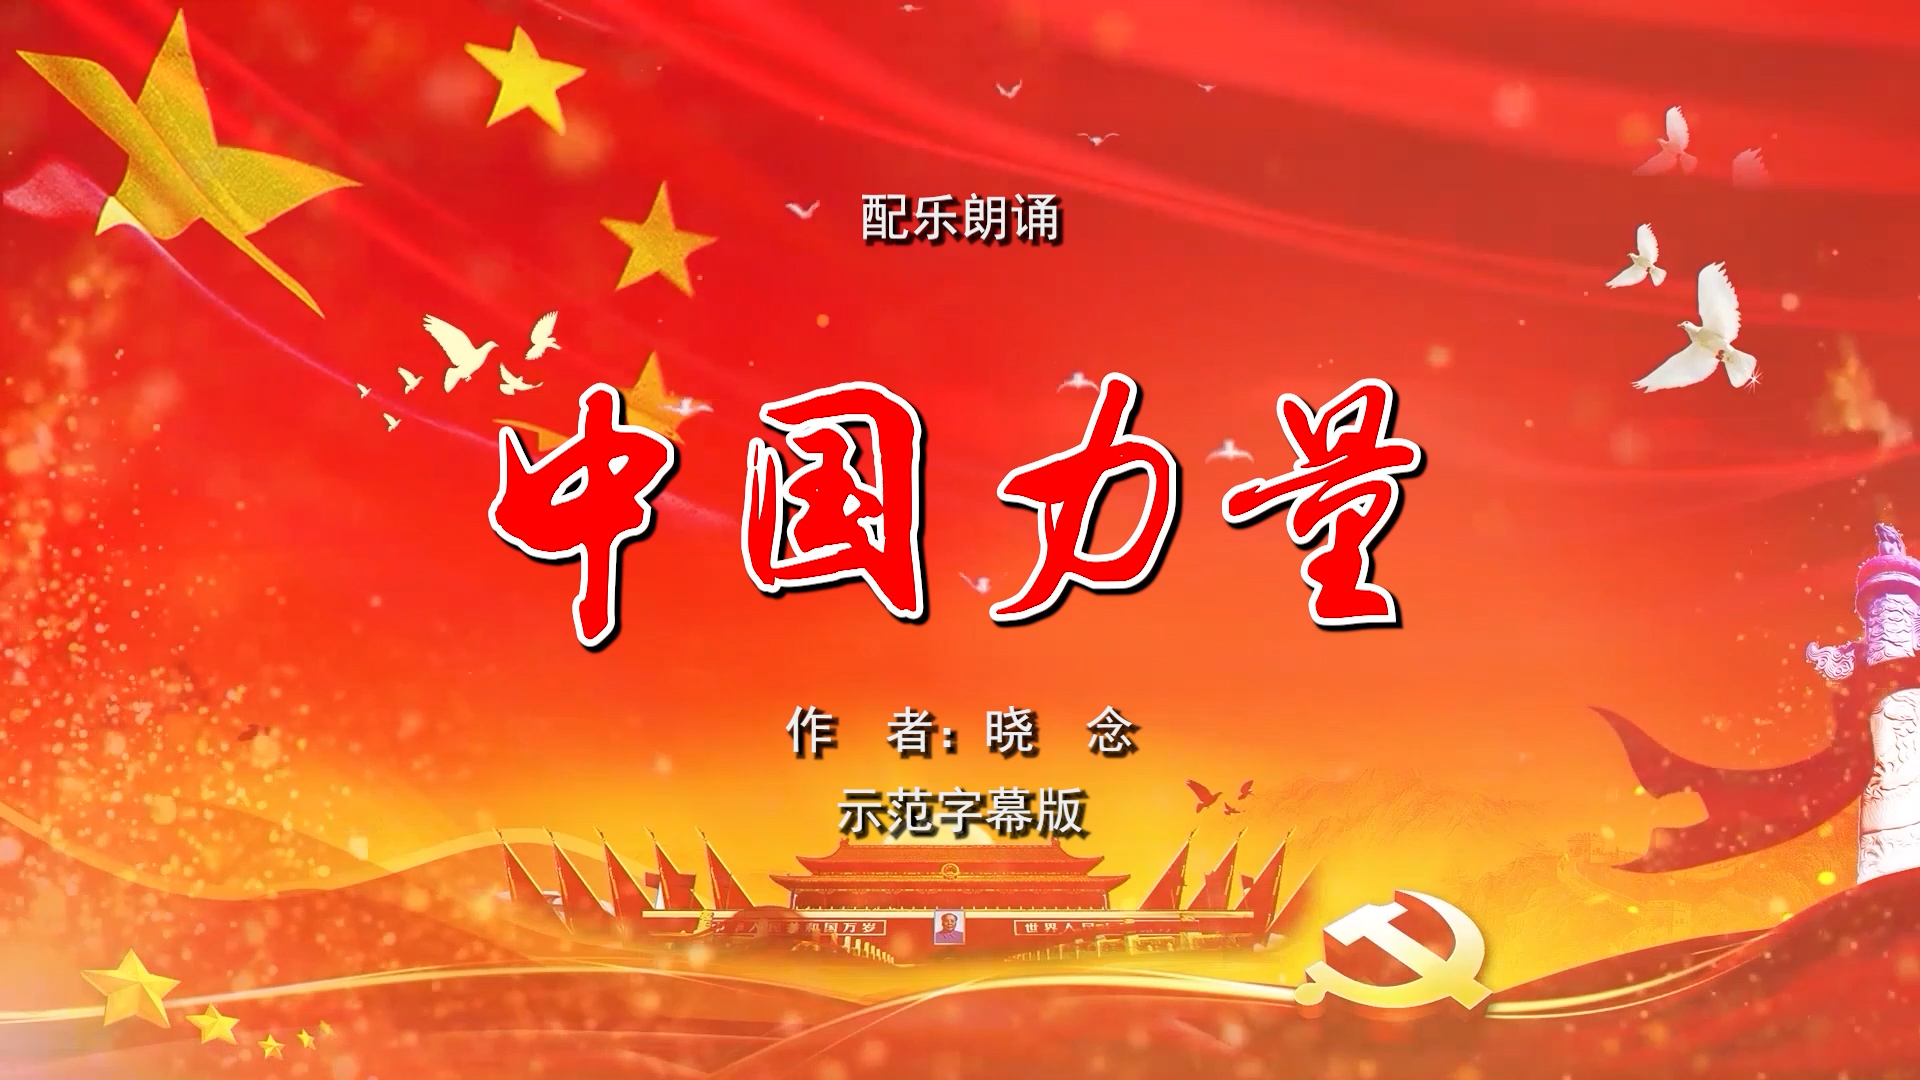 中国力量 双人爱国诗歌朗诵配乐伴奏舞台演出LED背景视频素材TV